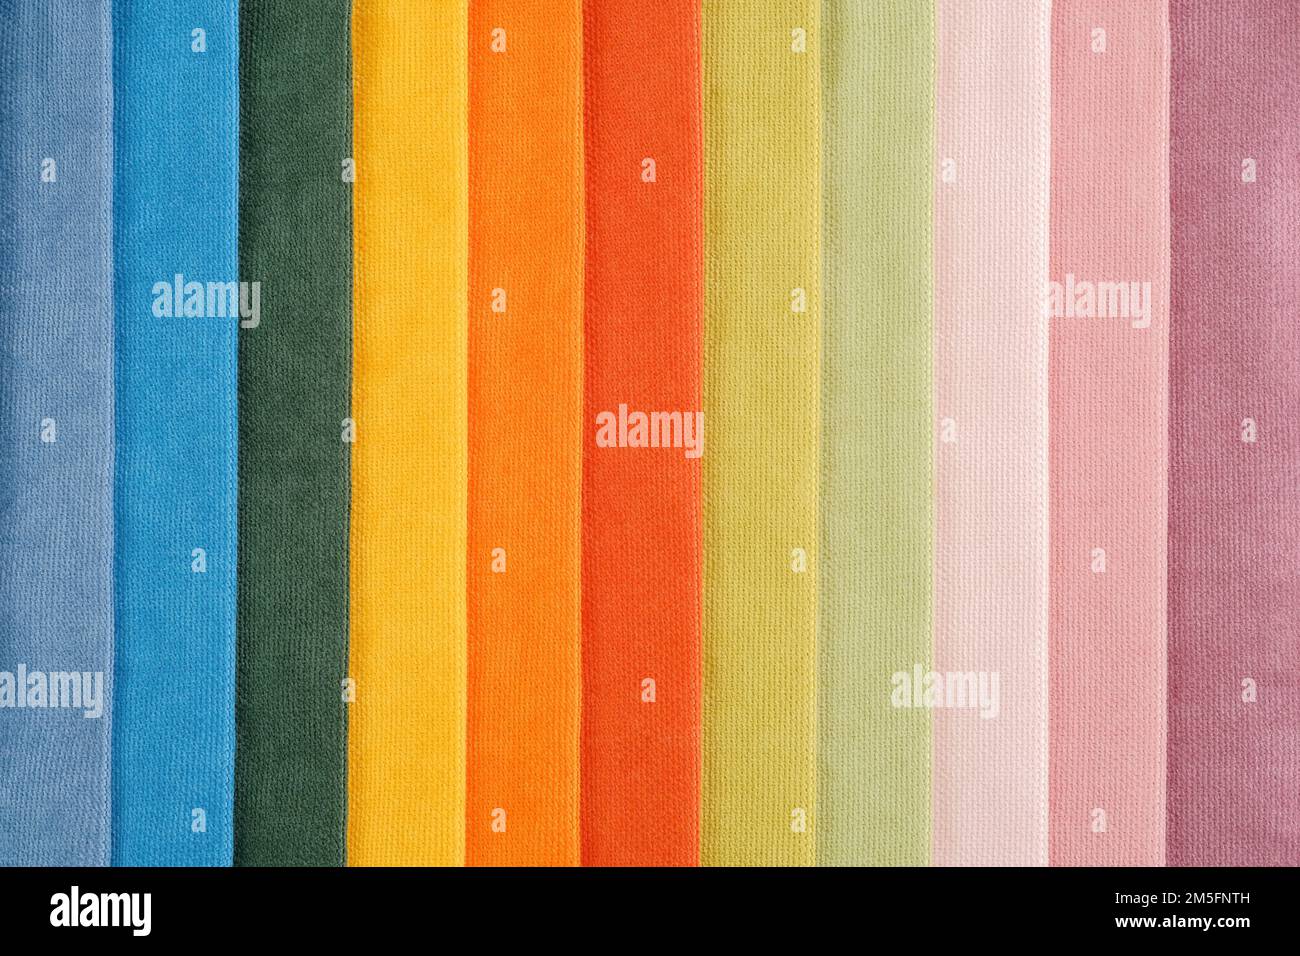 Campione di stoffa immagini e fotografie stock ad alta risoluzione - Alamy